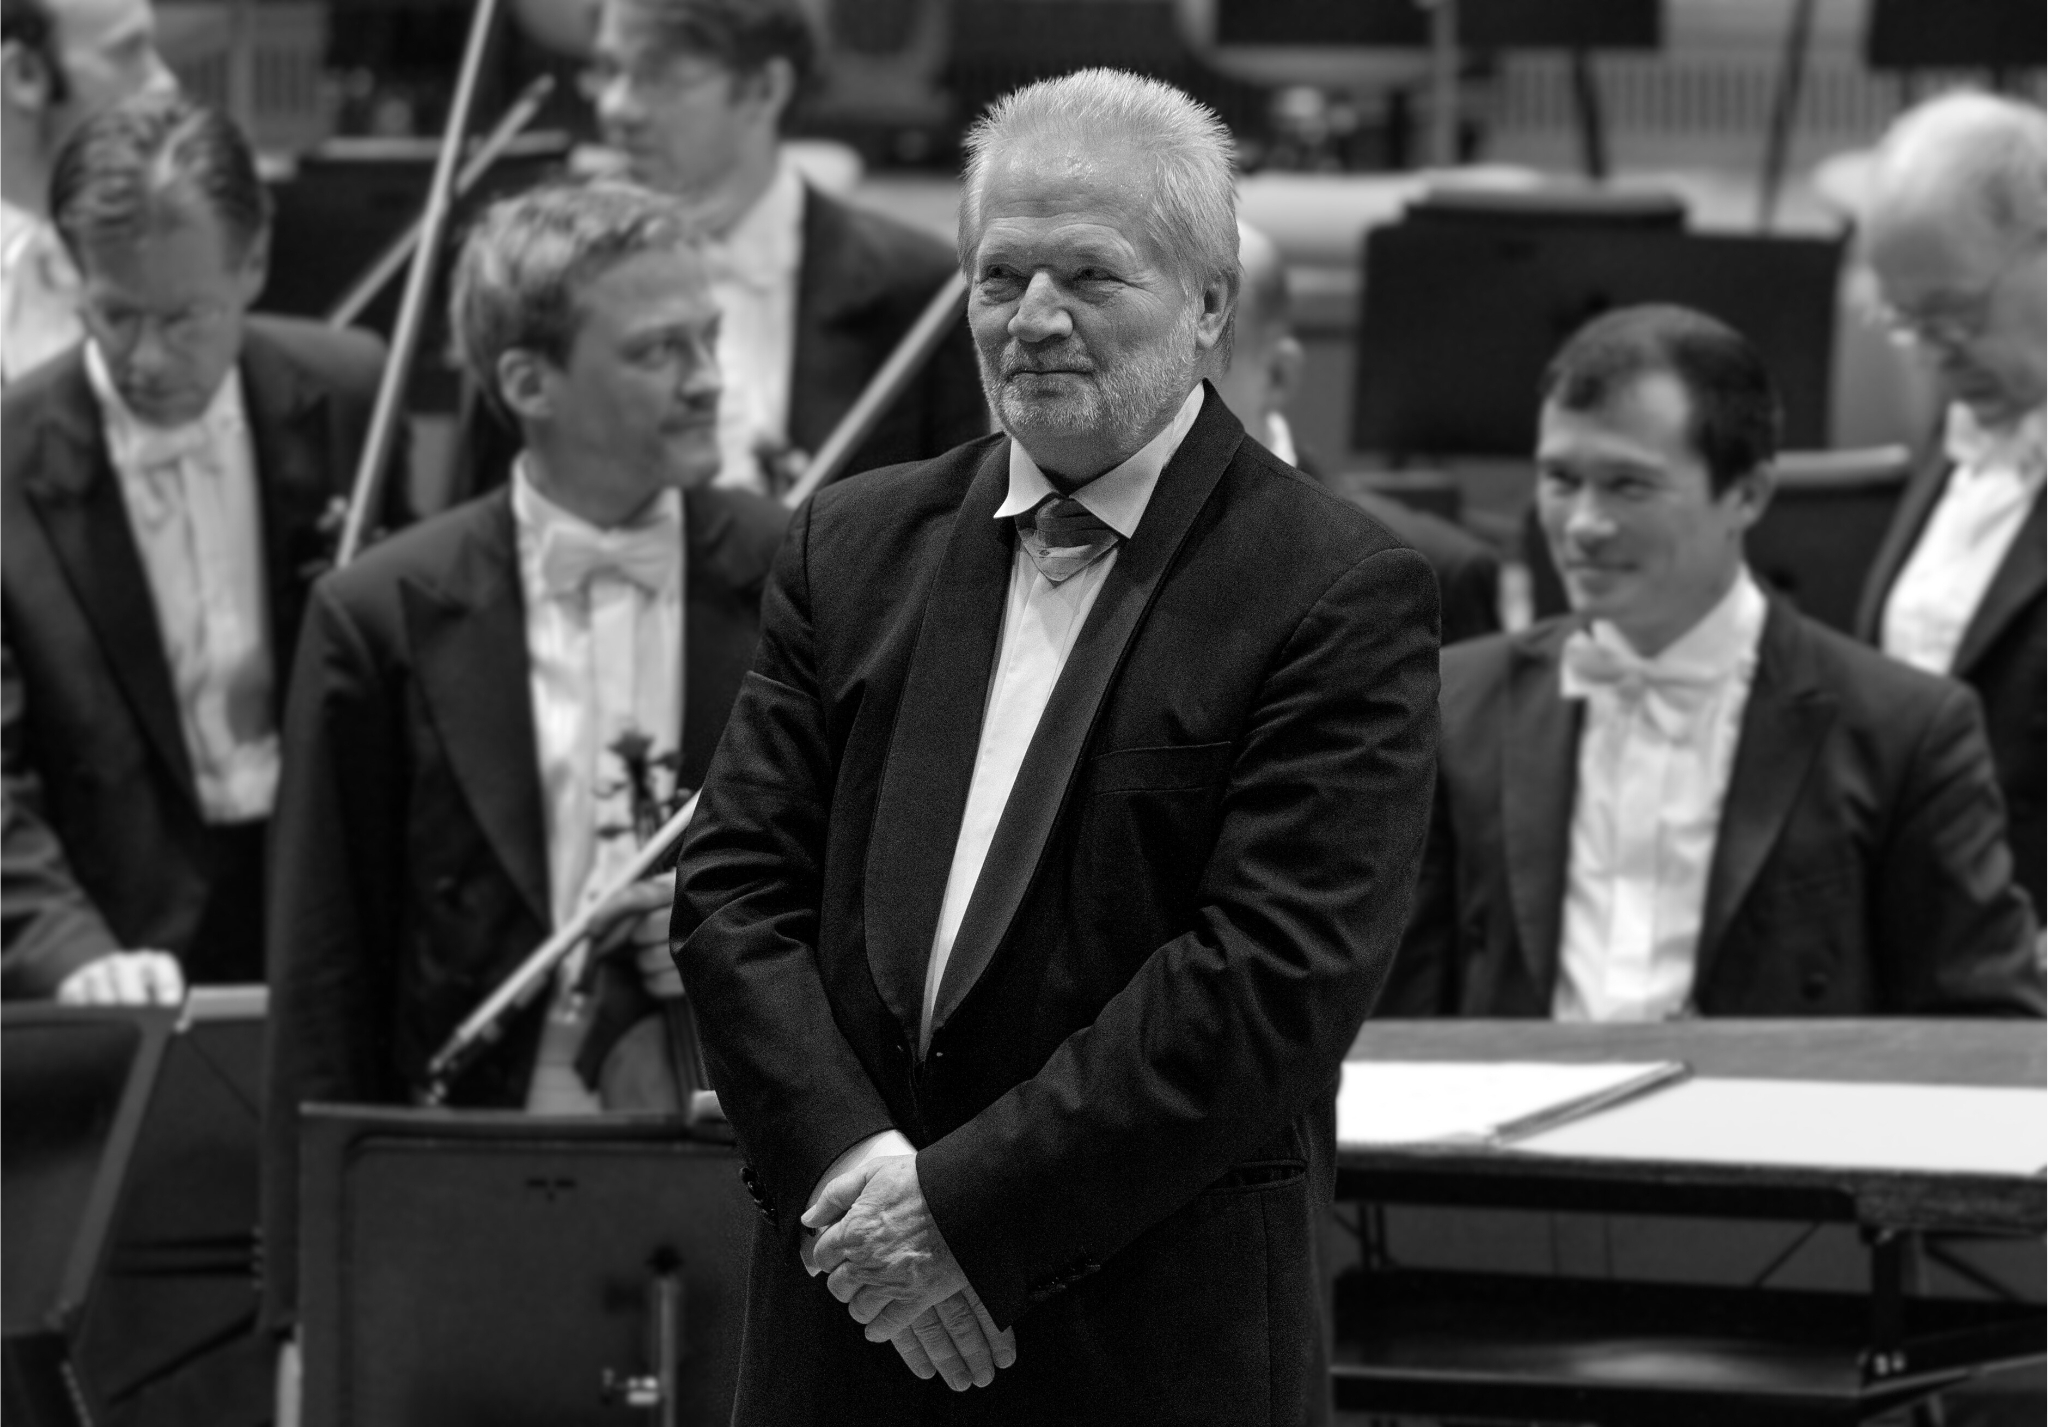 Peter Eötvös vor dem Orchester, schwarz-weiß Foto